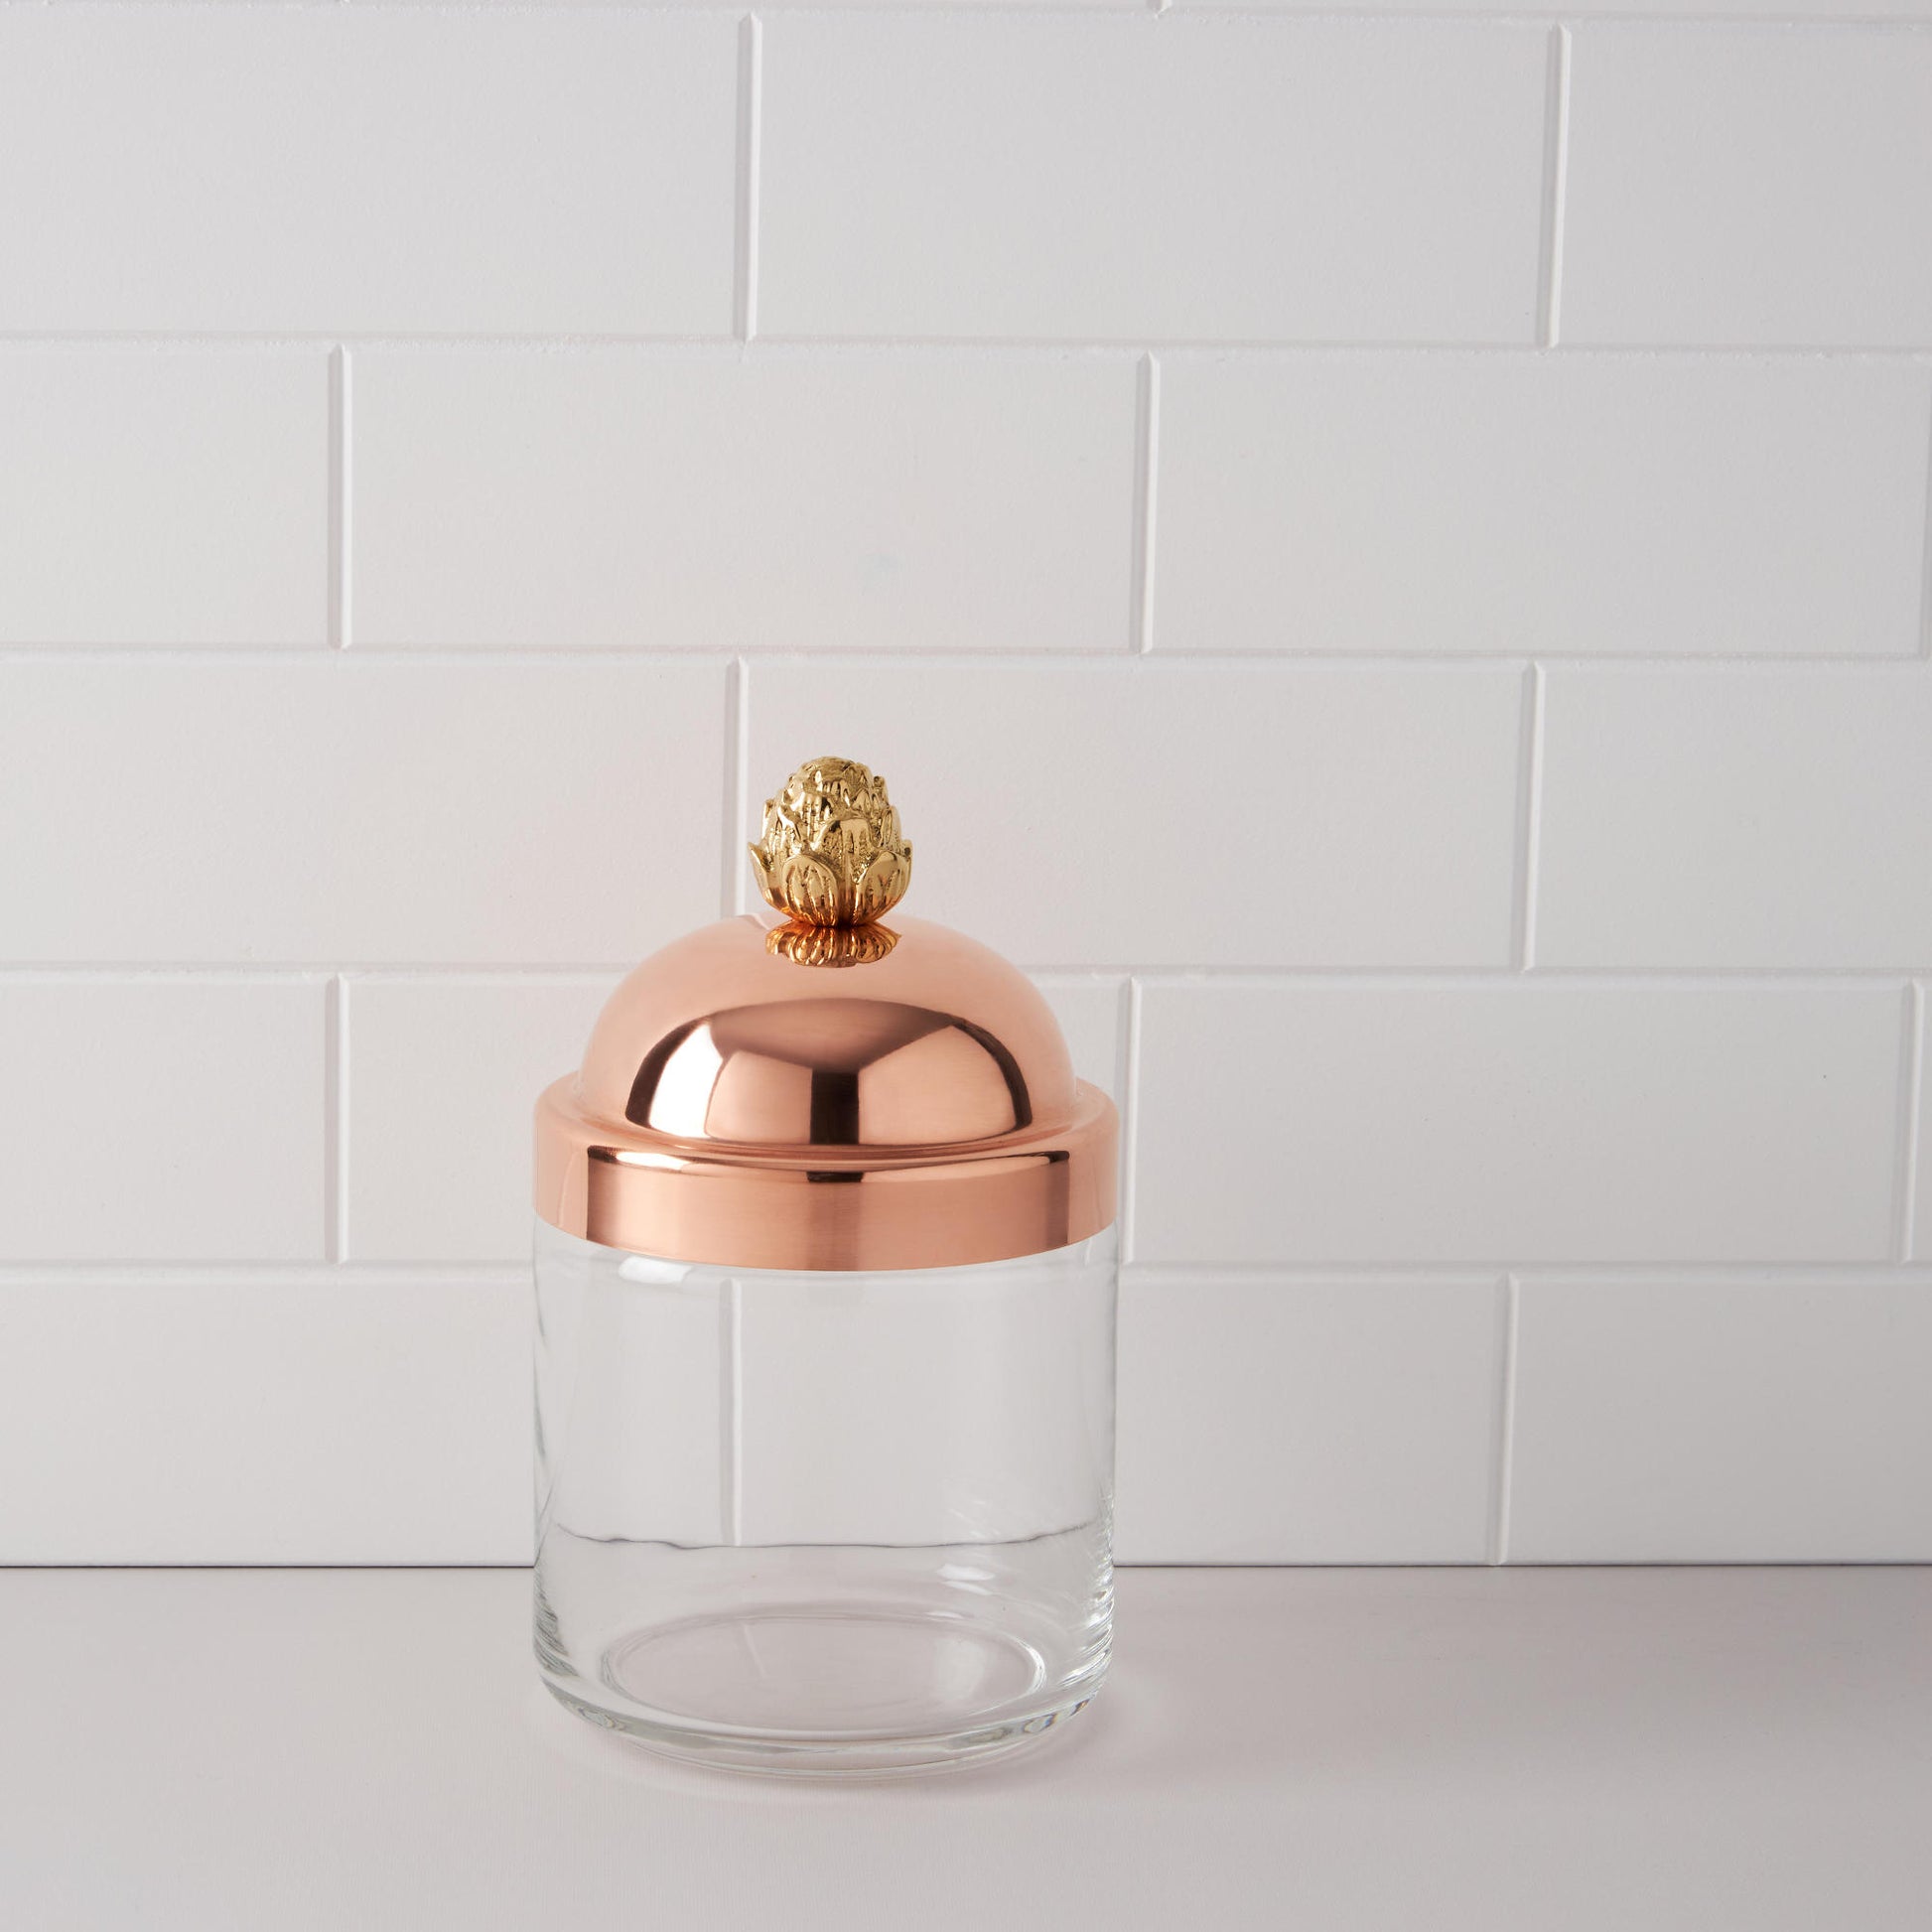 Ruffoni Glass Kitchen Jar with copper lid - Accessories – Ruffoni US